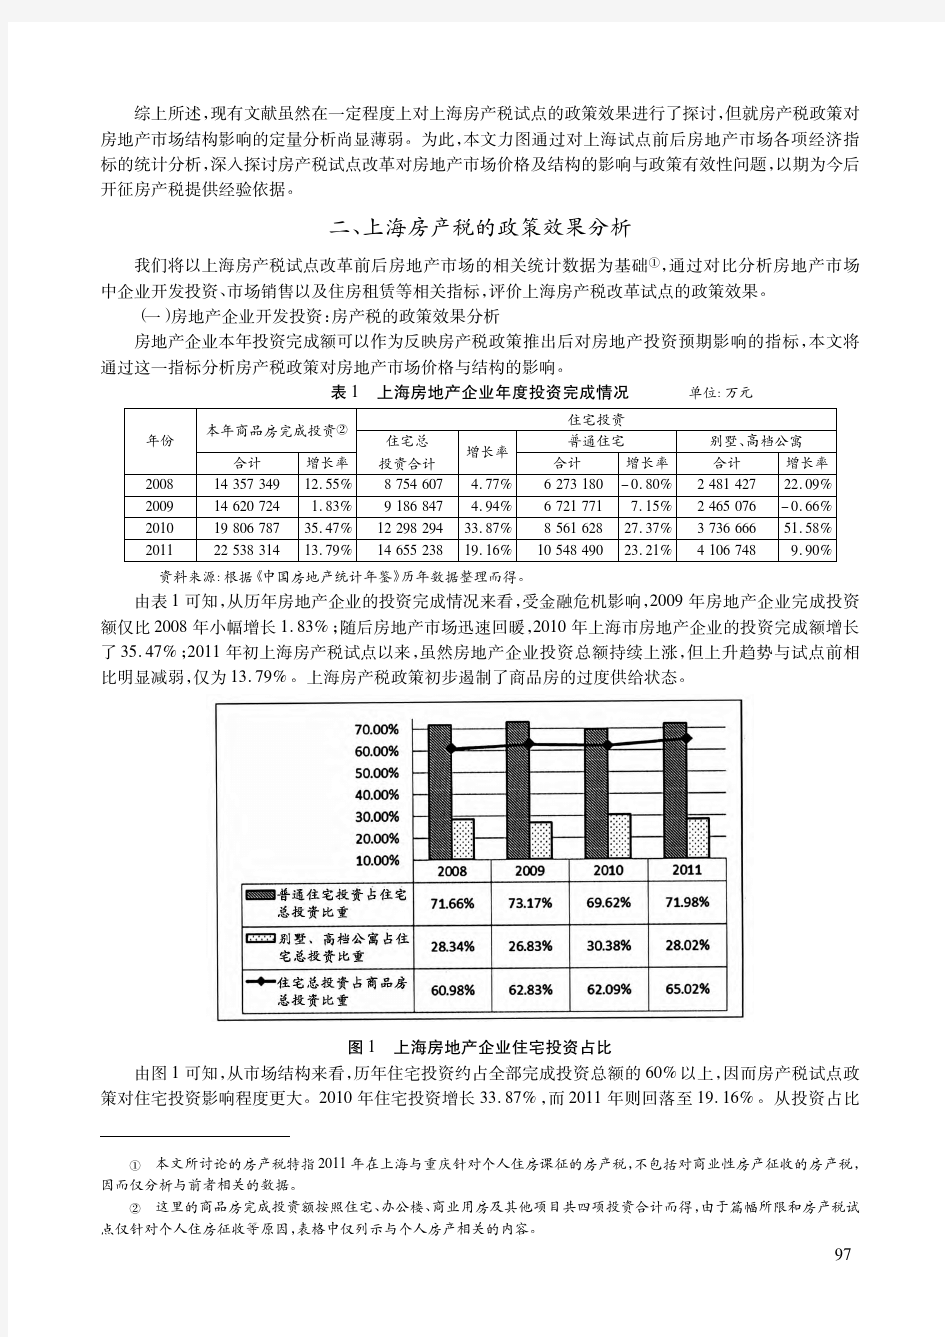 房产税与房地产市场价格及结构_基于上海房产税试点的经验数据分析